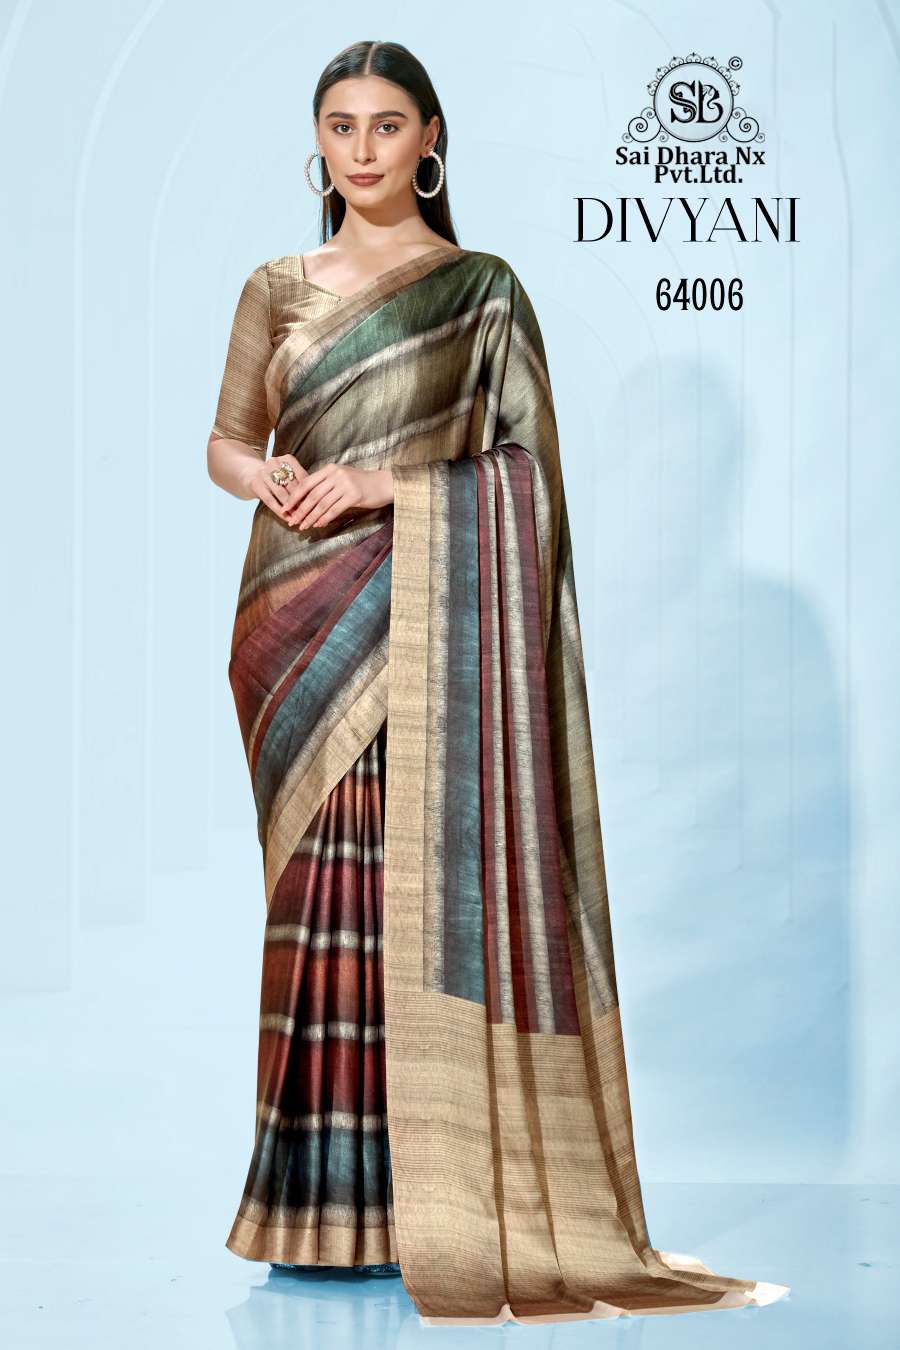 kashvi creation presents satin fabric  newly launched divyani saree wholesale shop in surat - SaiDharaNx